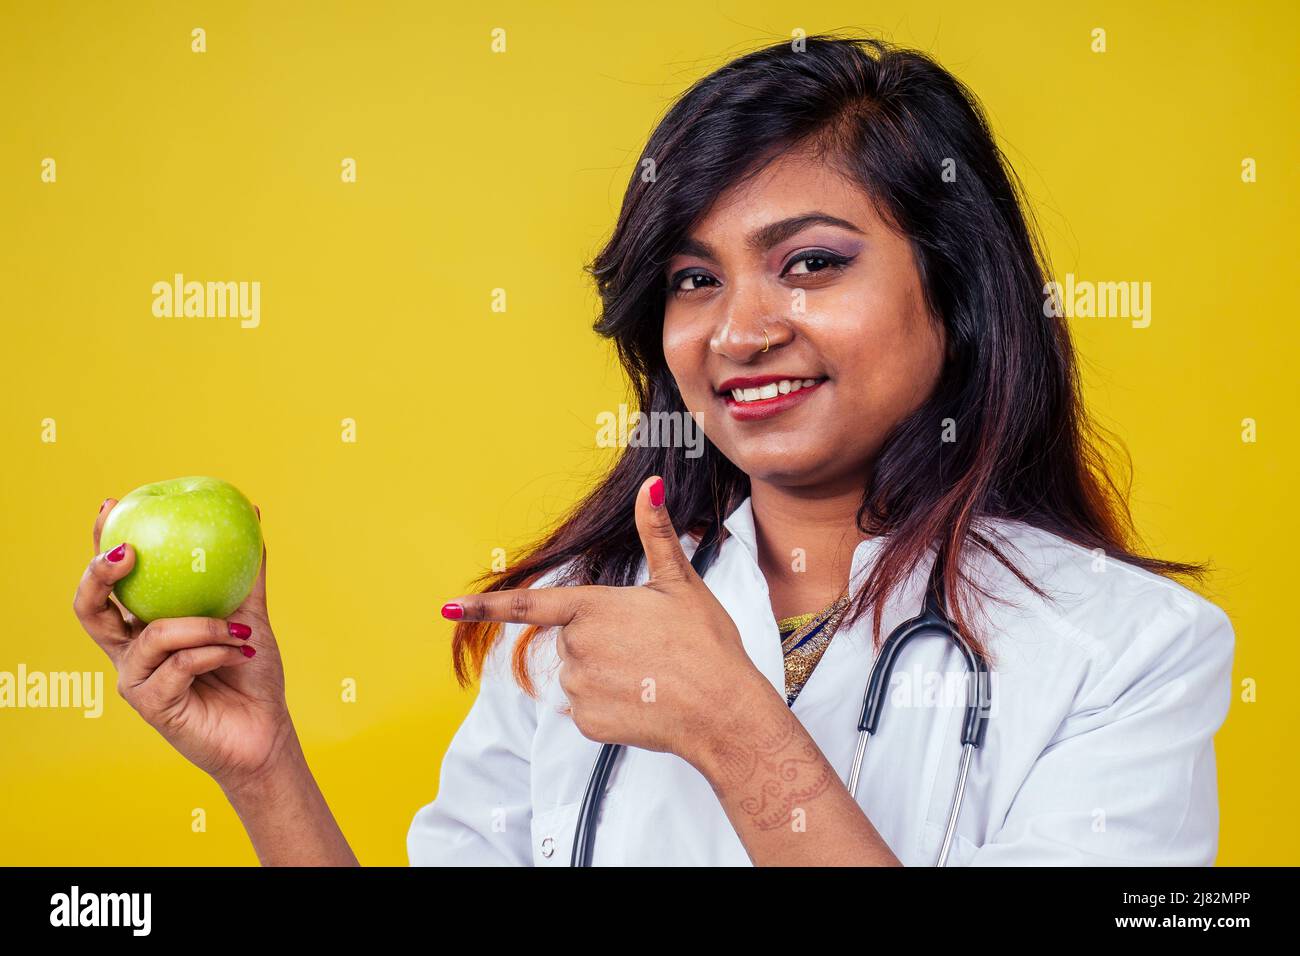 Femme indienne jeune et belle blonde femme gynécologue médecin utilisant le stéthoscope tenant une pomme verte dans la main dans un manteau médical blanc sur un jaune Banque D'Images